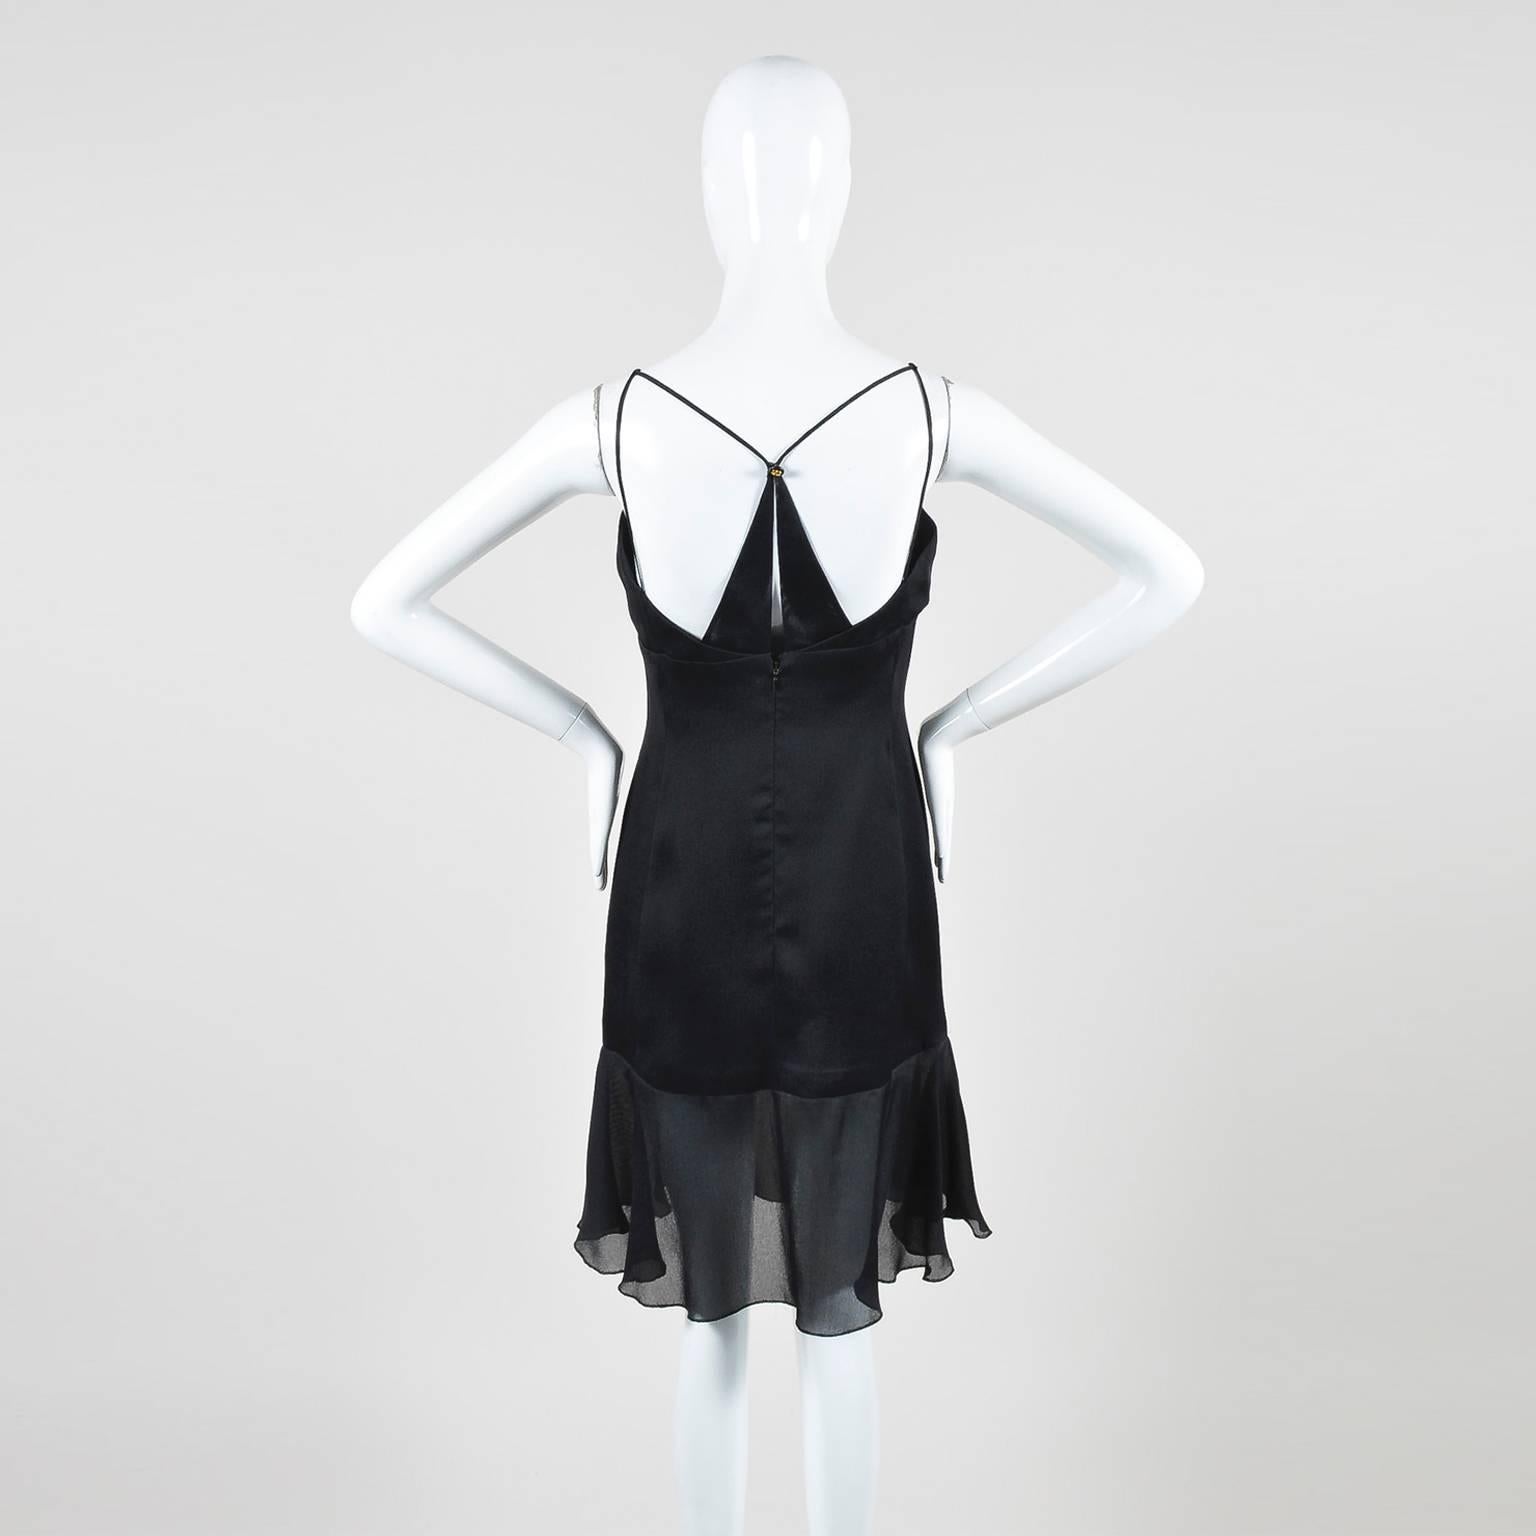 Chanel Boutique 97P Black Silk Spaghetti Strap 'CC' Button Dress SZ 40 In Good Condition For Sale In Chicago, IL